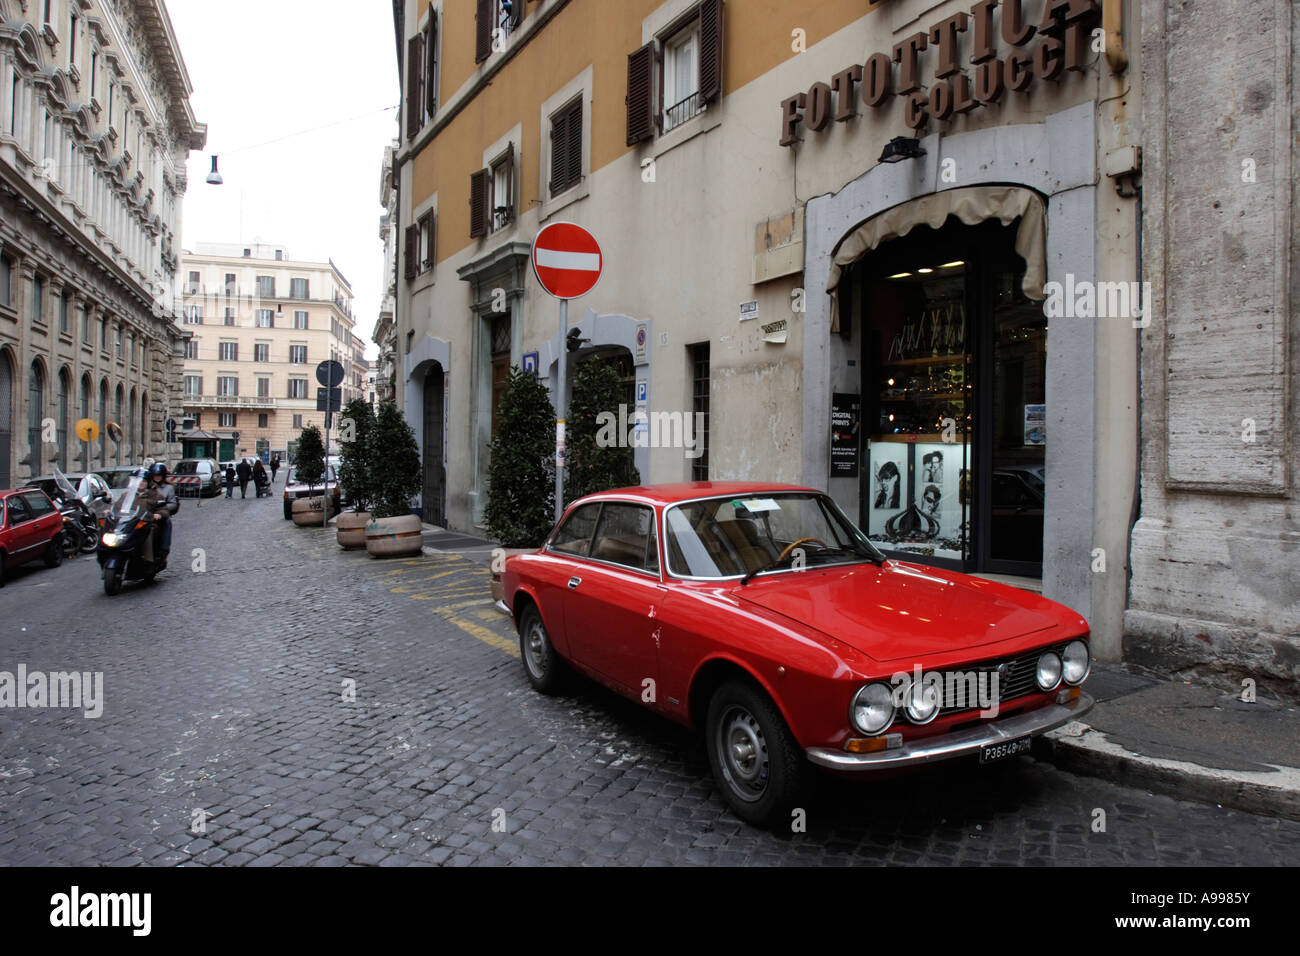 Ein rotes Auto Alfa Romeo Bertone parkt vor Foto-Shop Fotottica Colucci in Rom, Italien Stockfoto